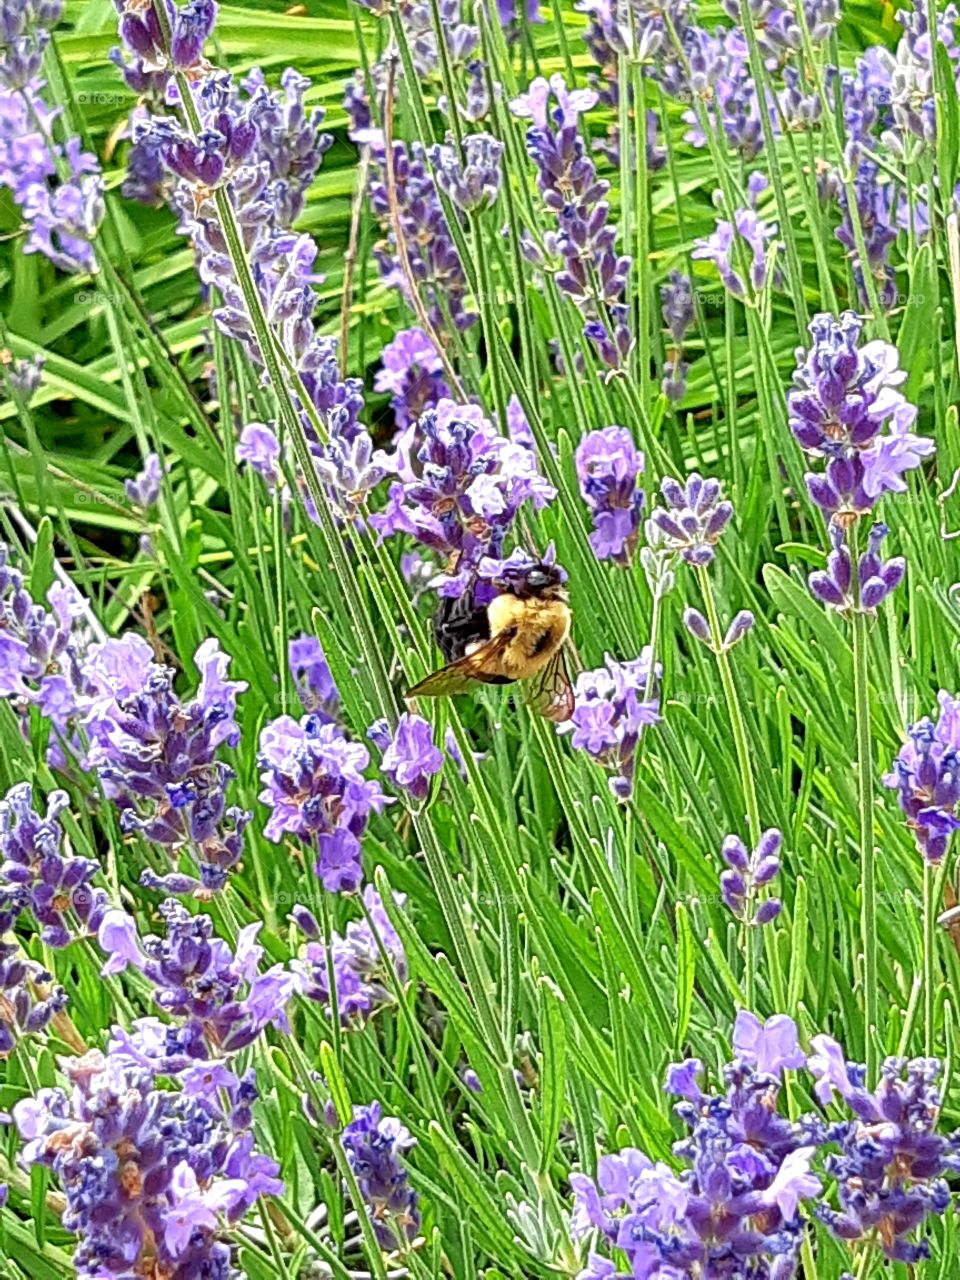 Bumblebee on sweet lavender